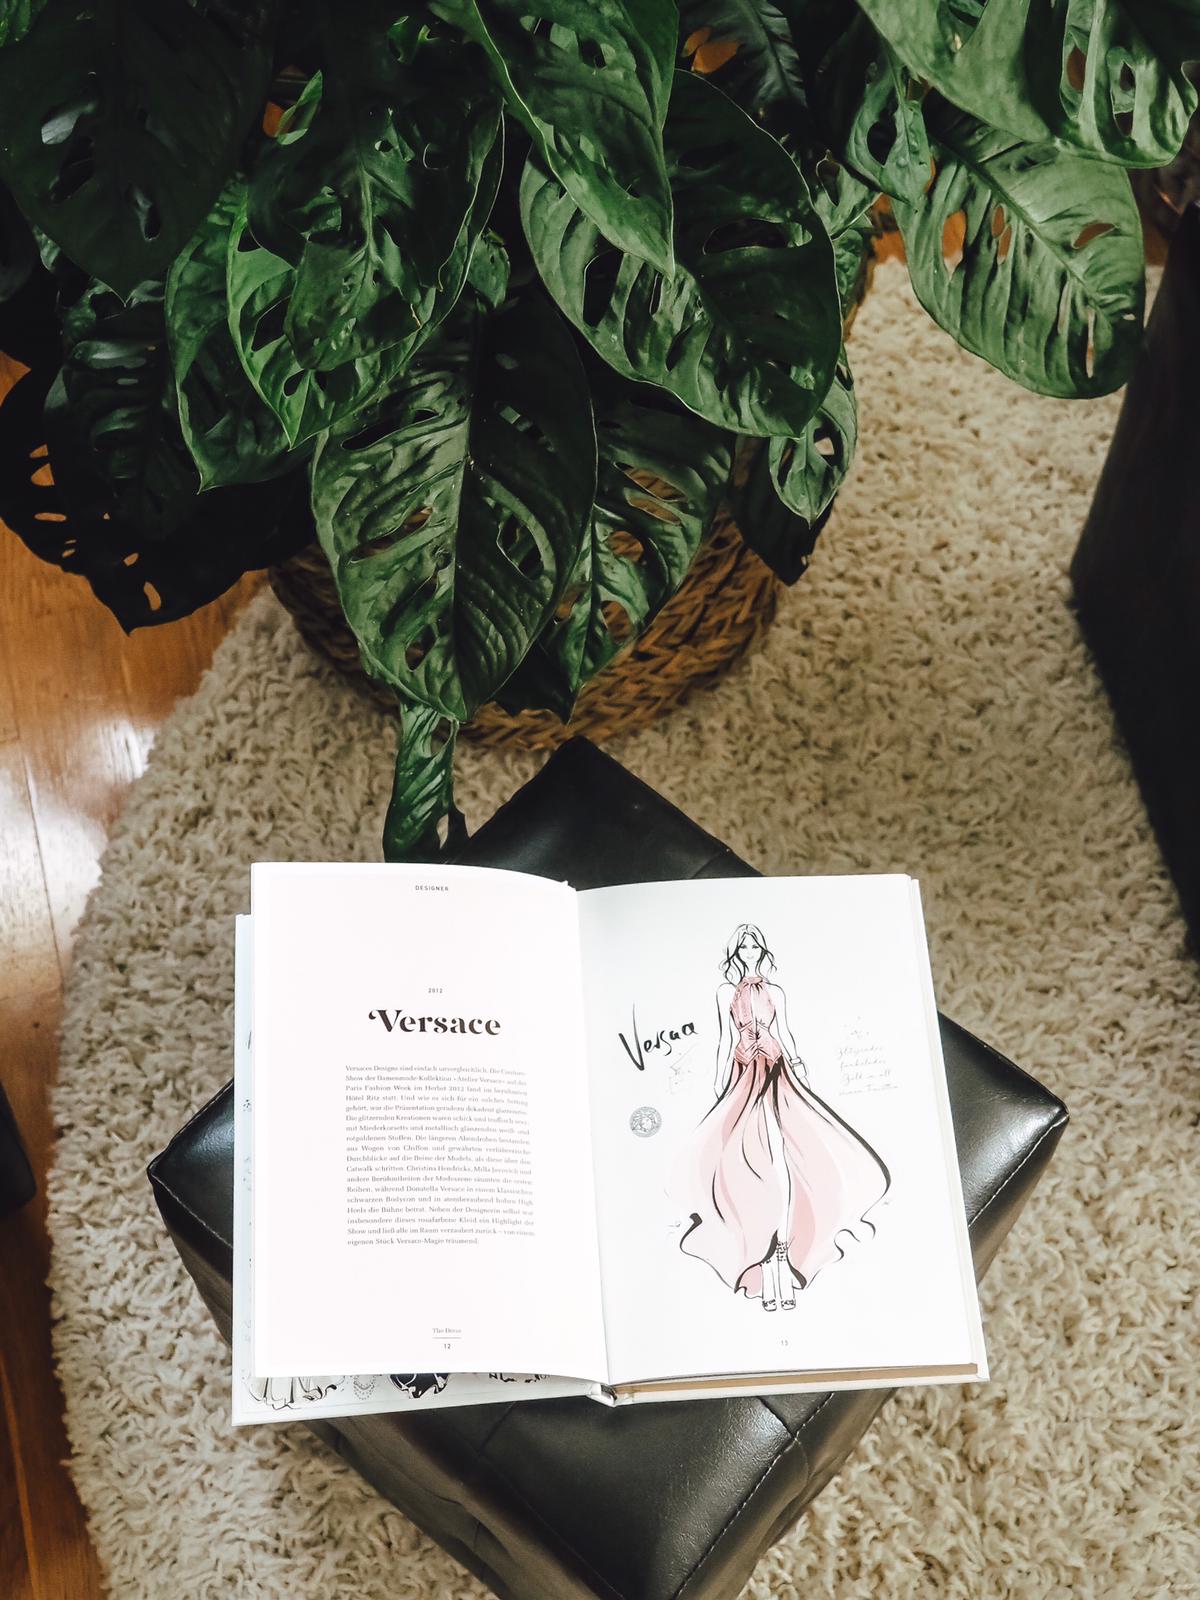 Das super stylische neue Buch von Megan Hess The Dress zeigt 100 traumhafte Kleider der Weltgeschichte mit Illustrationen. Heute mehr dazu auf meinem Blog!